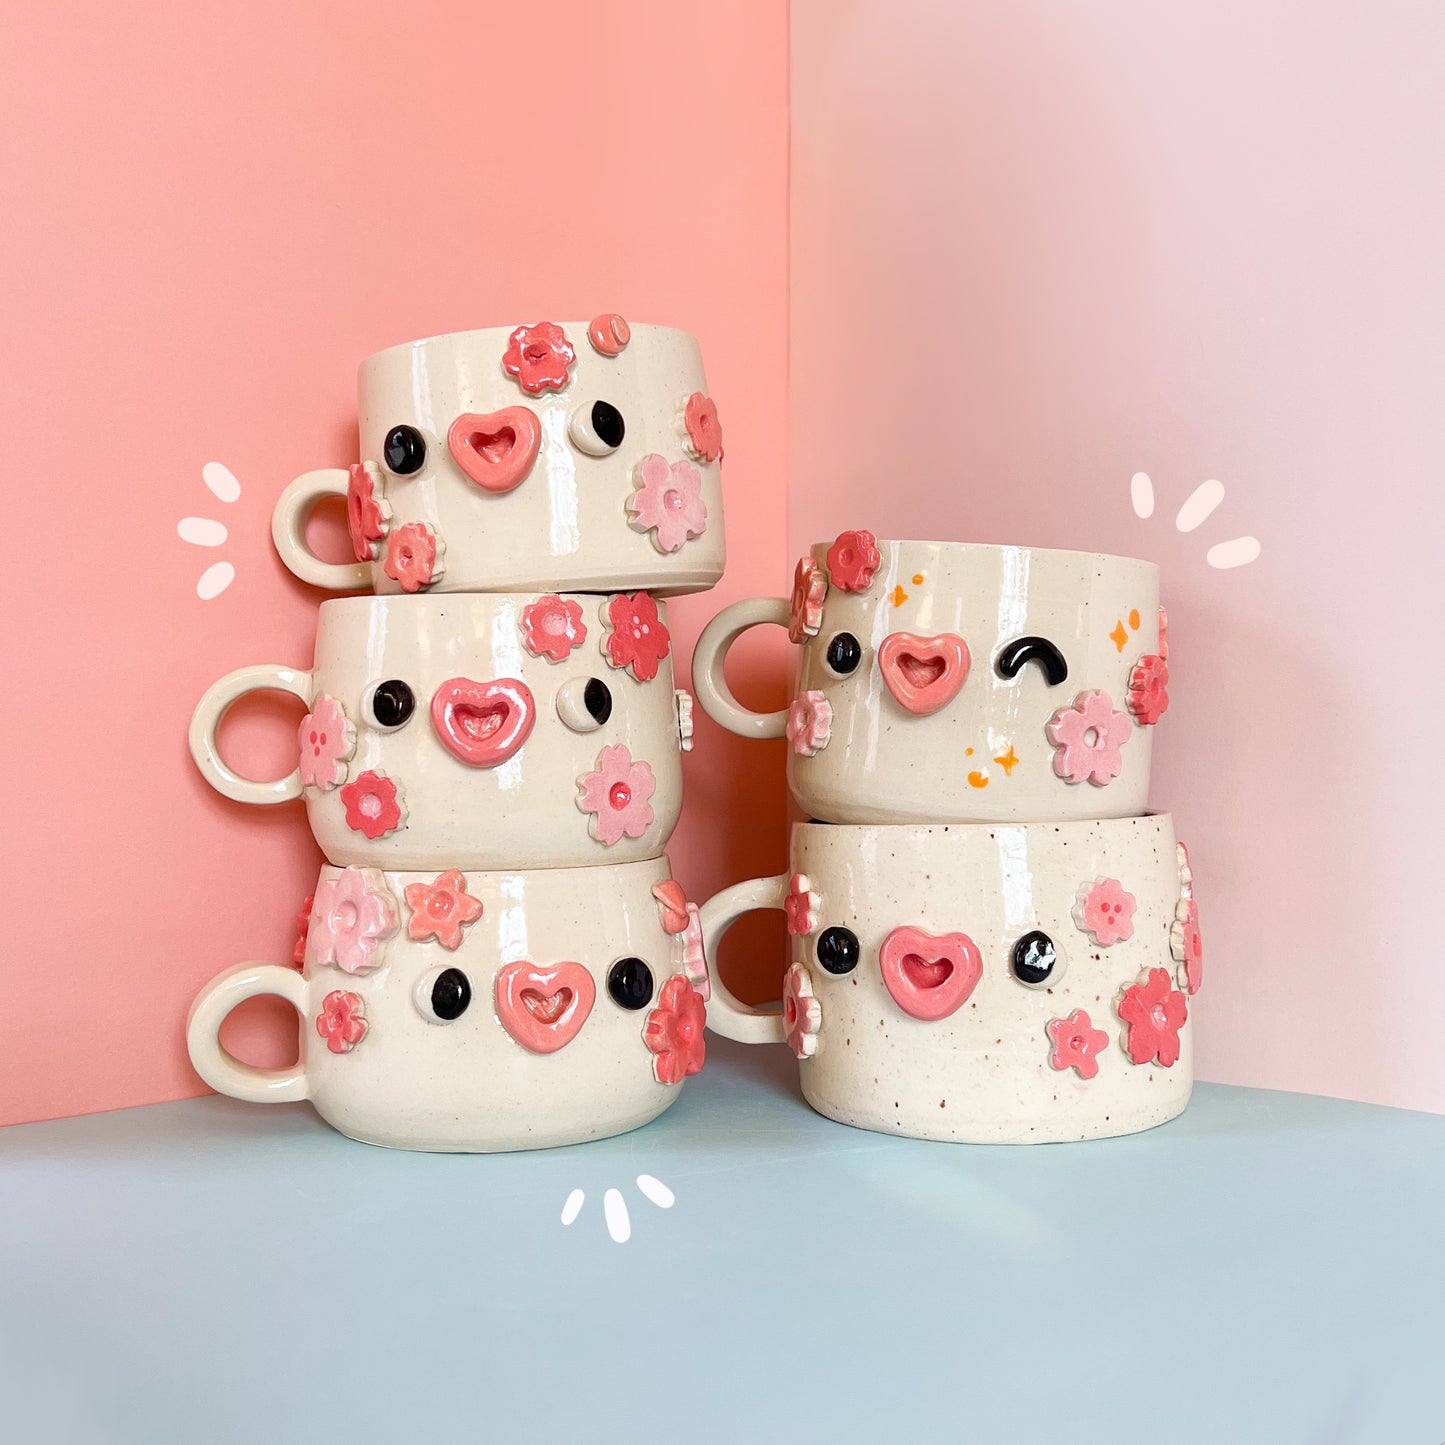 Cherry Blossom mugs